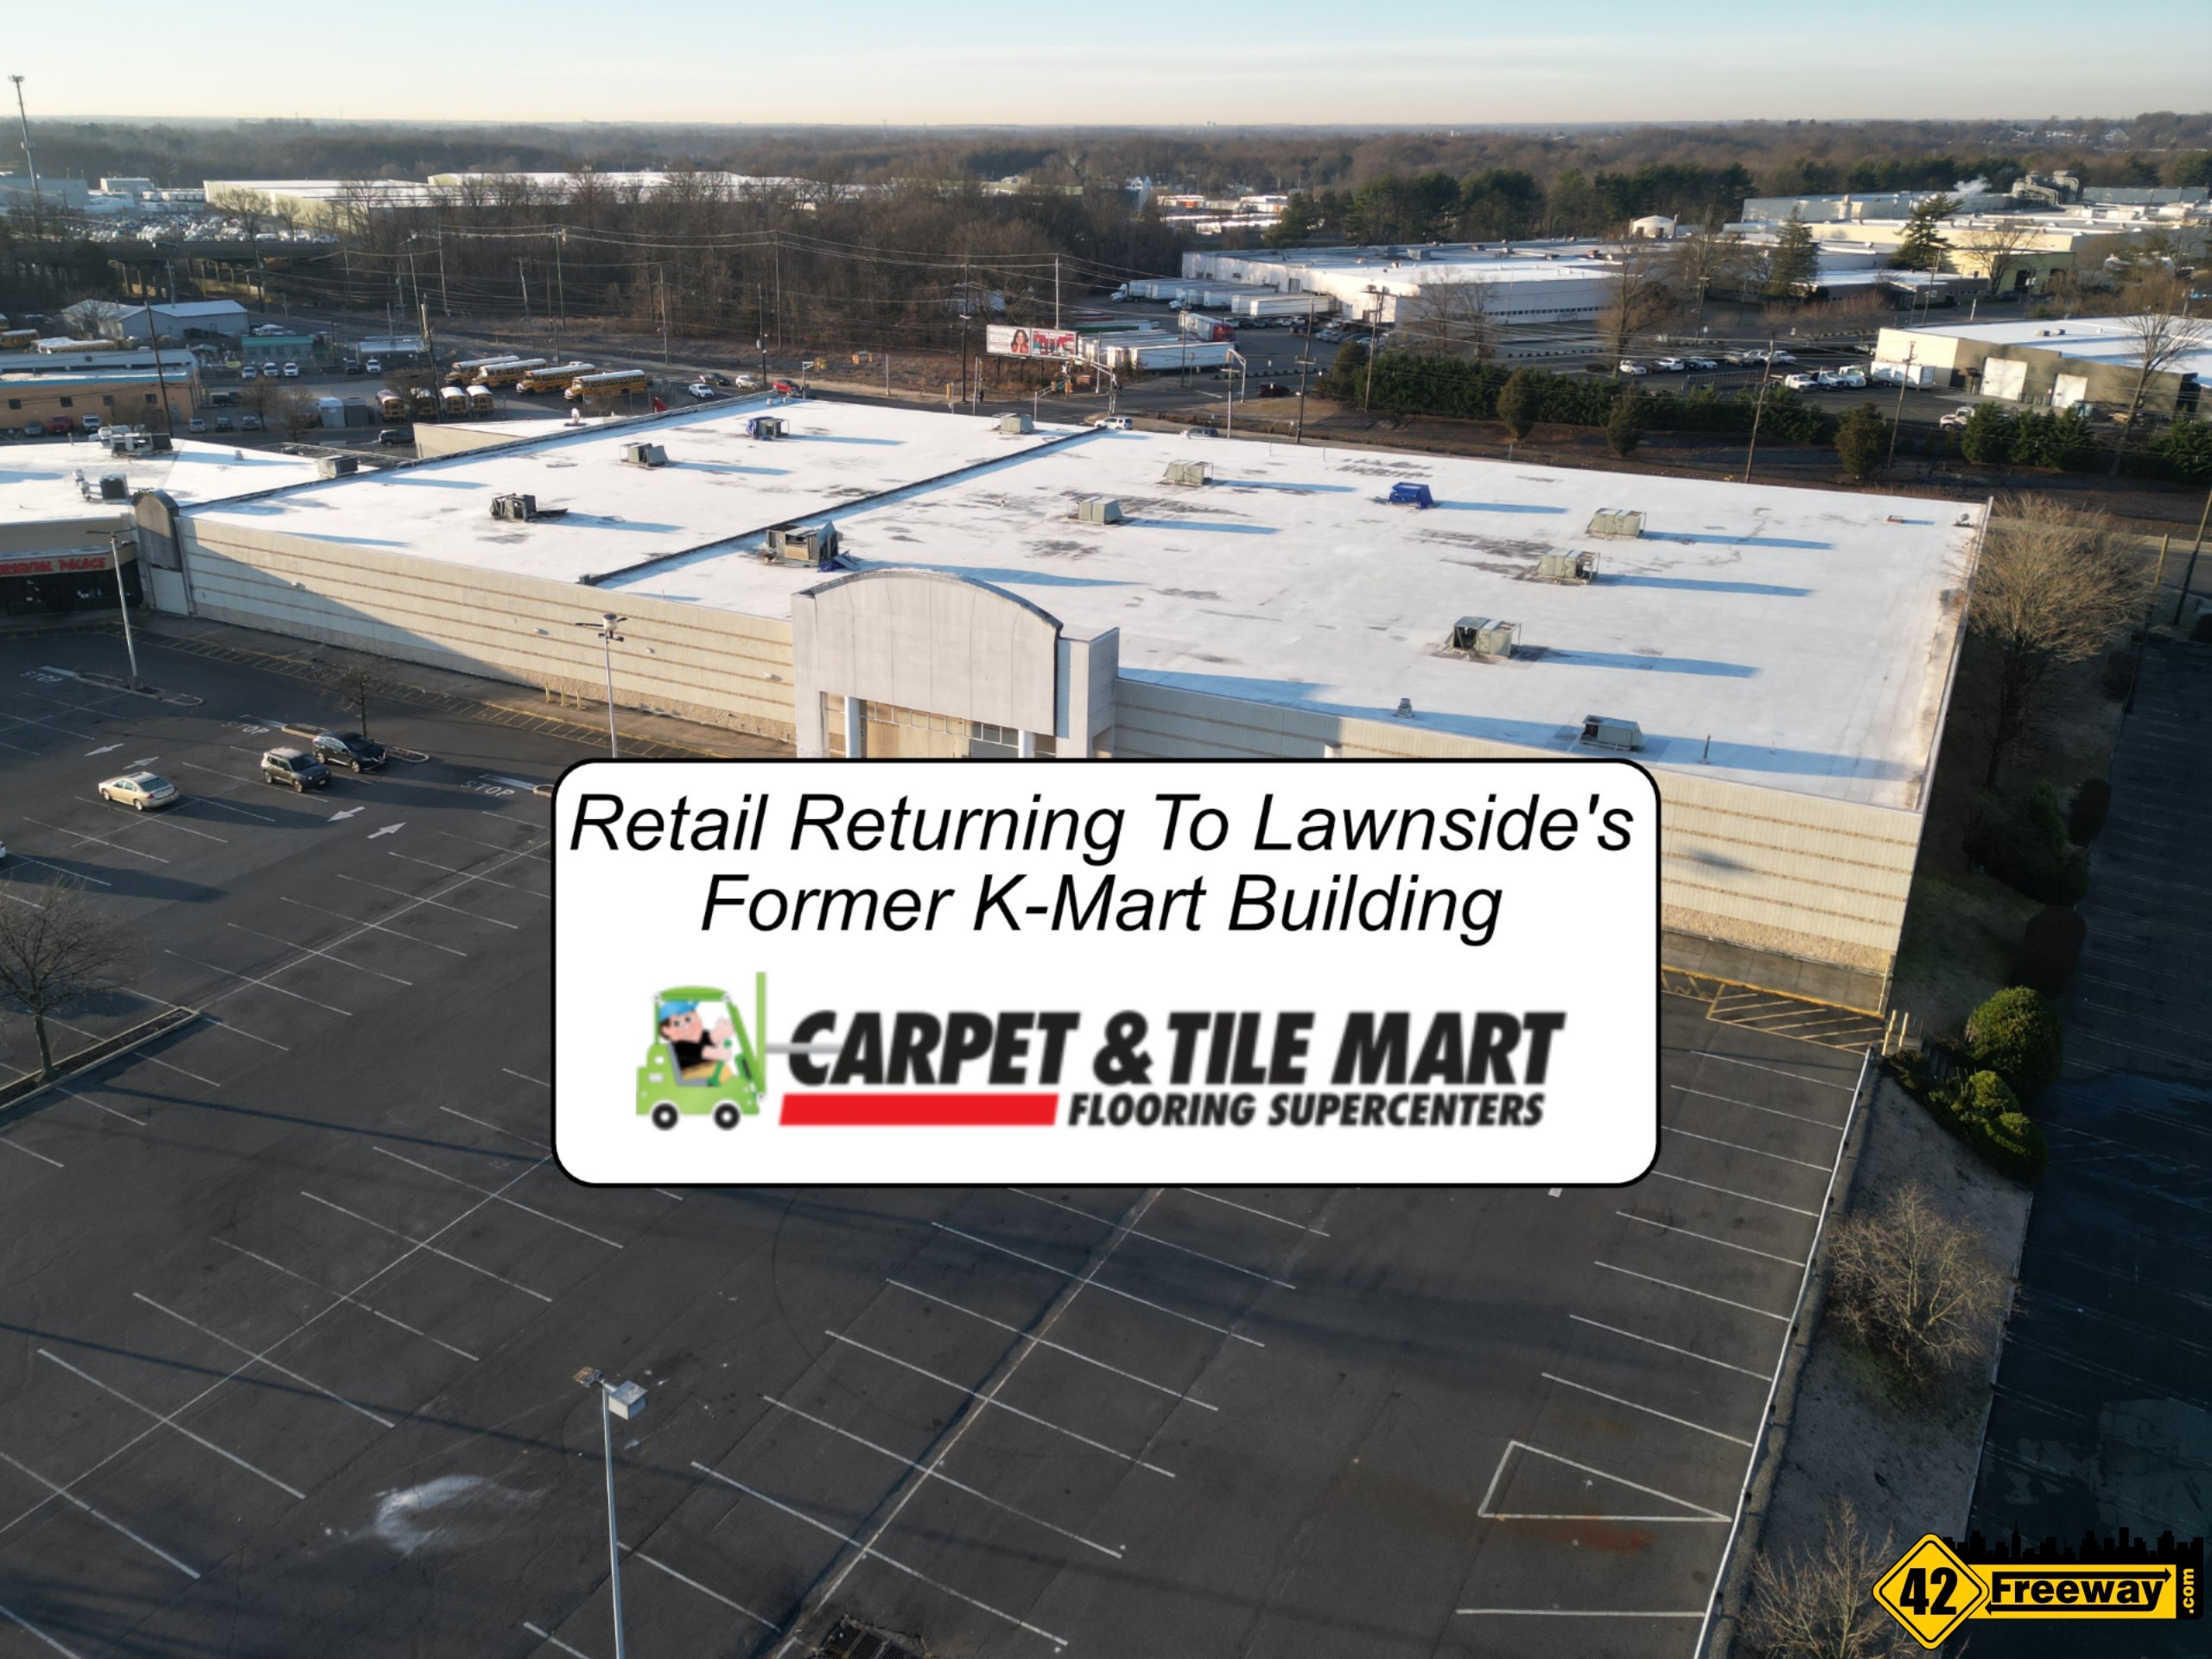 Carpet & Tile Mart Flooring Supercenter Coming to Lawnside's Former K-Mart Building